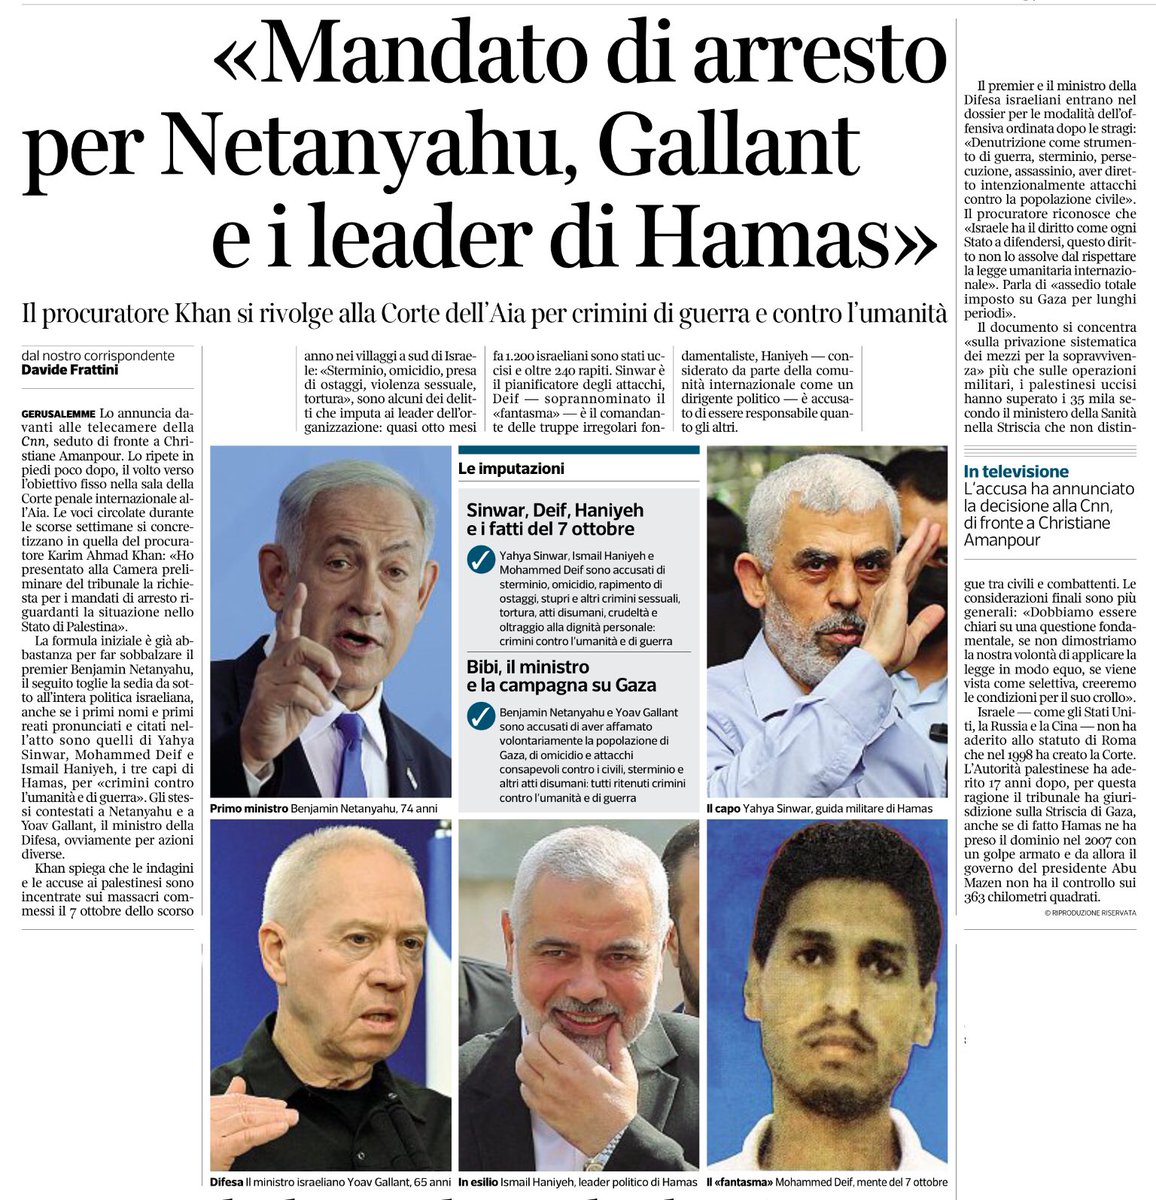 “Mandato di arresto per Netanyahu, Gallant e i leader di Hamas” @dafrattini, @Corriere